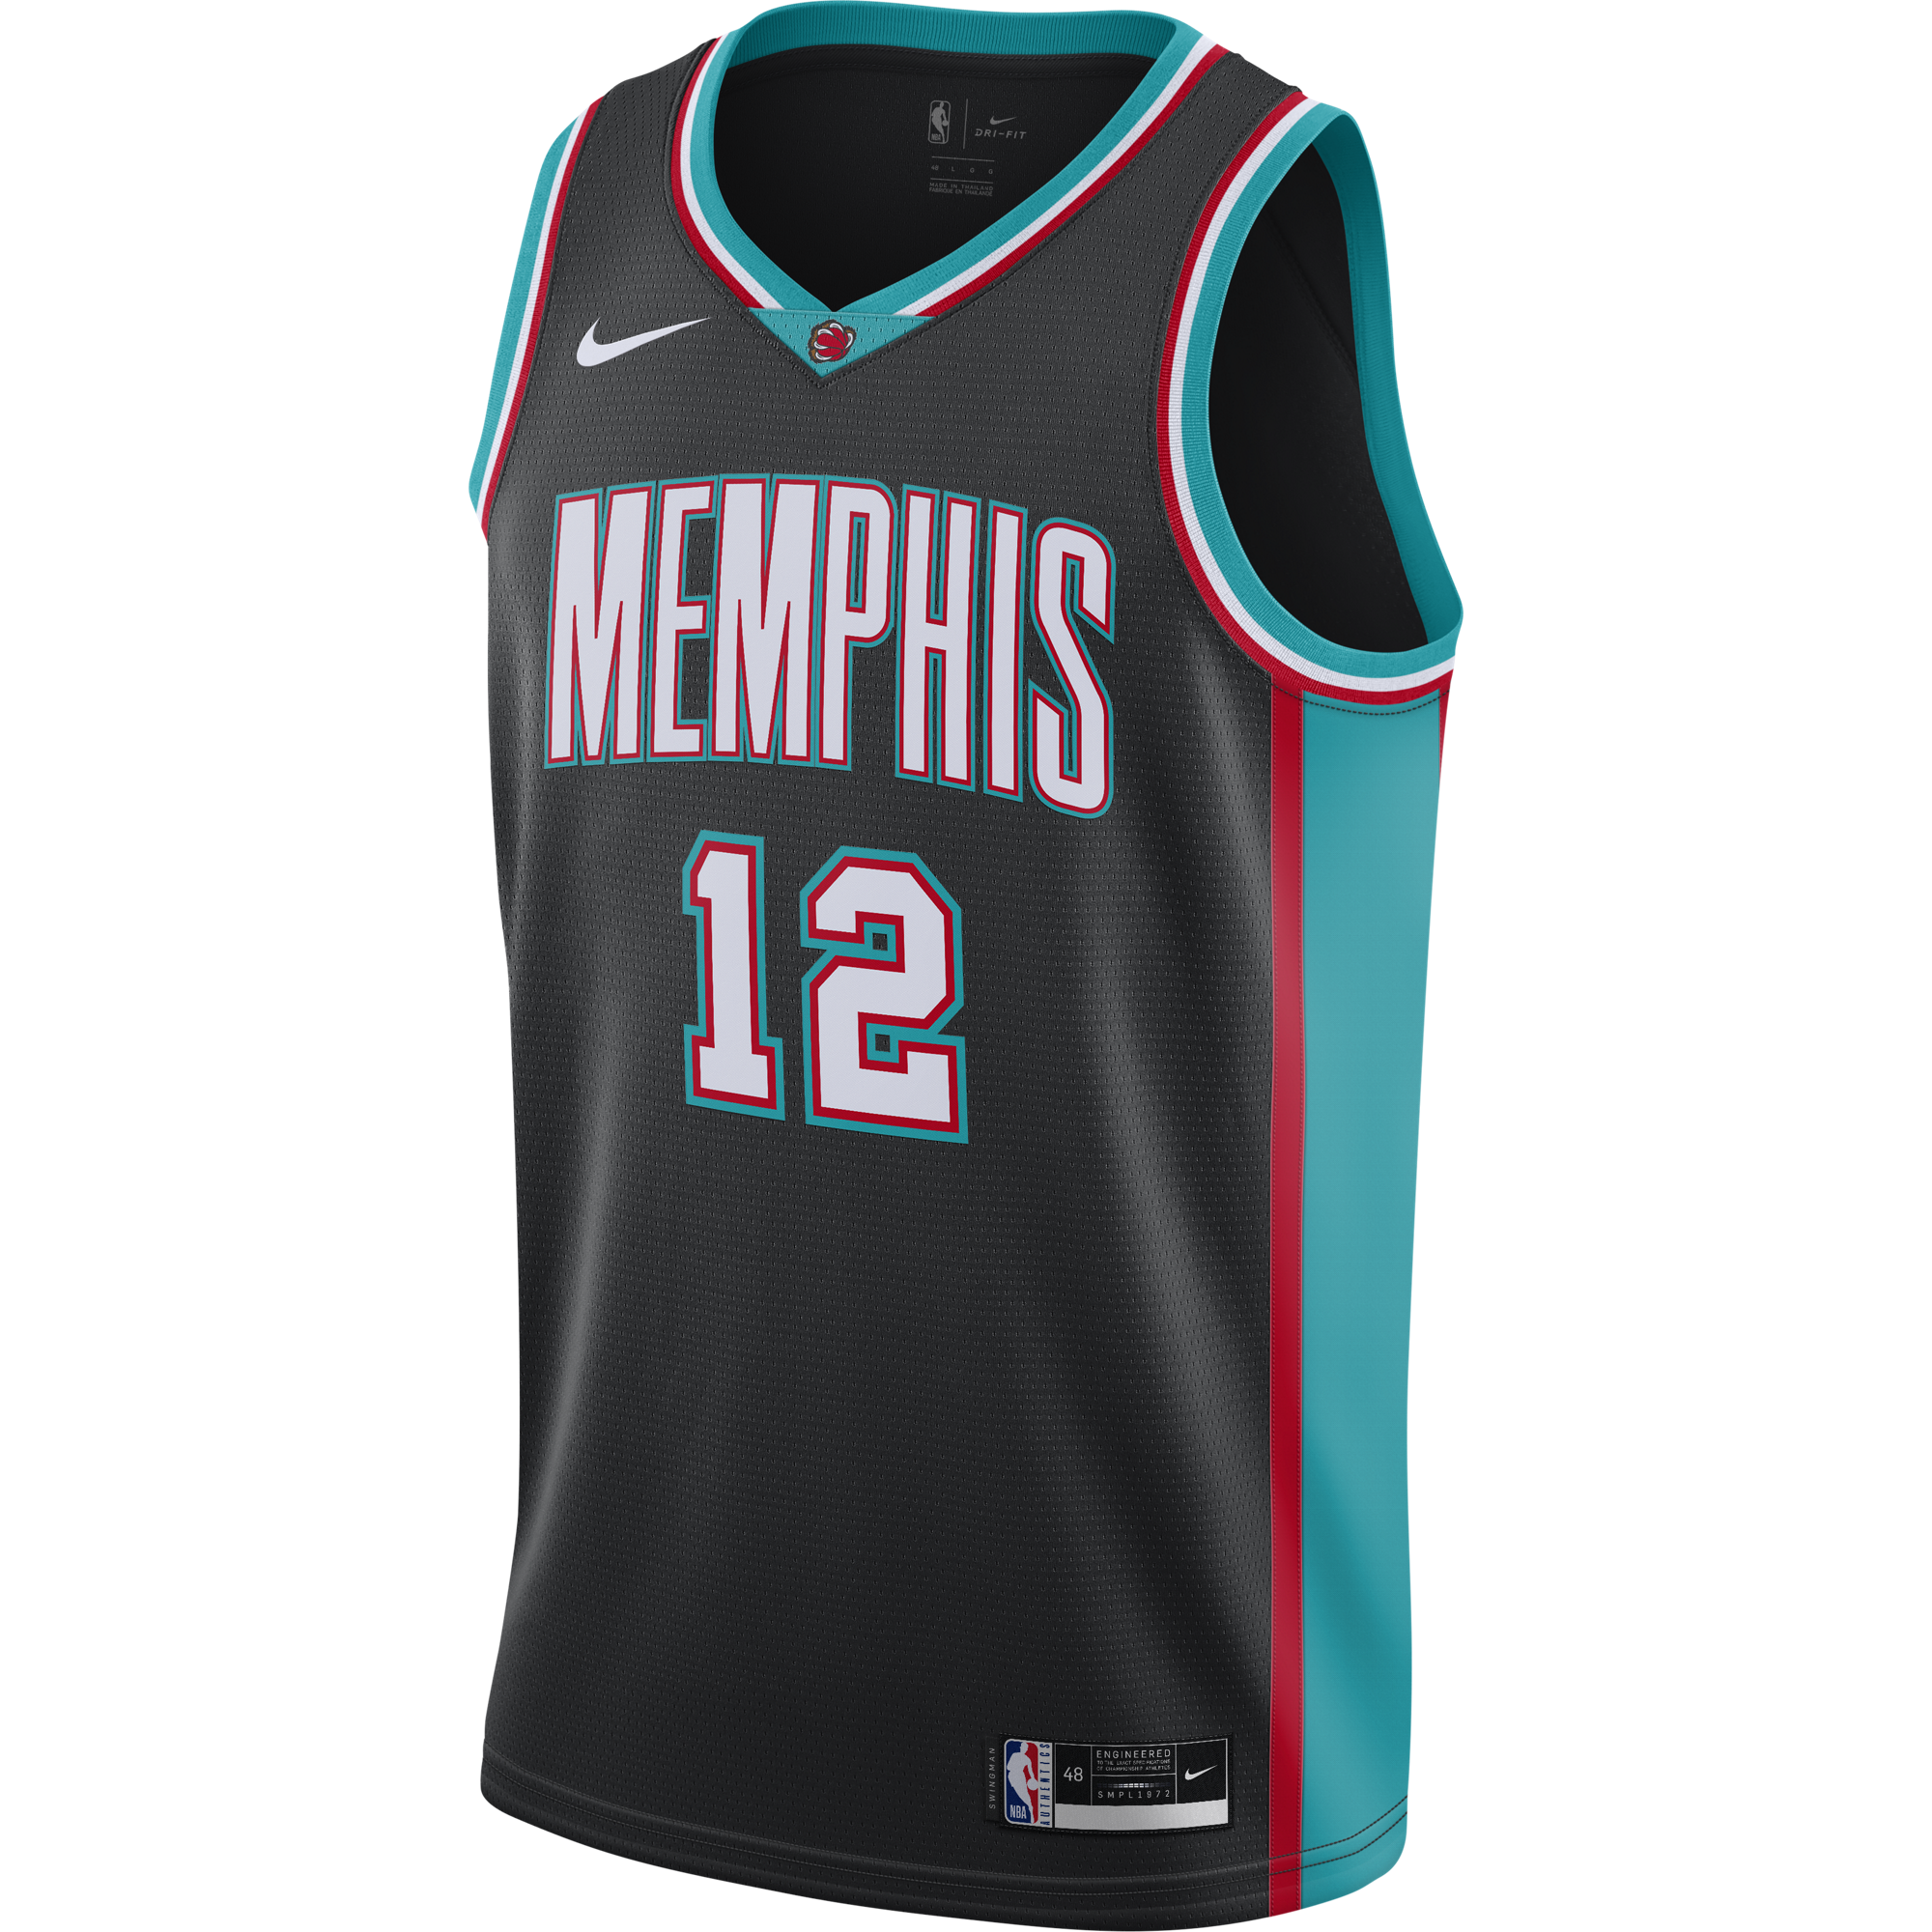 Memphis Grizzlies Road Uniform  Nba outfit, Memphis grizzlies